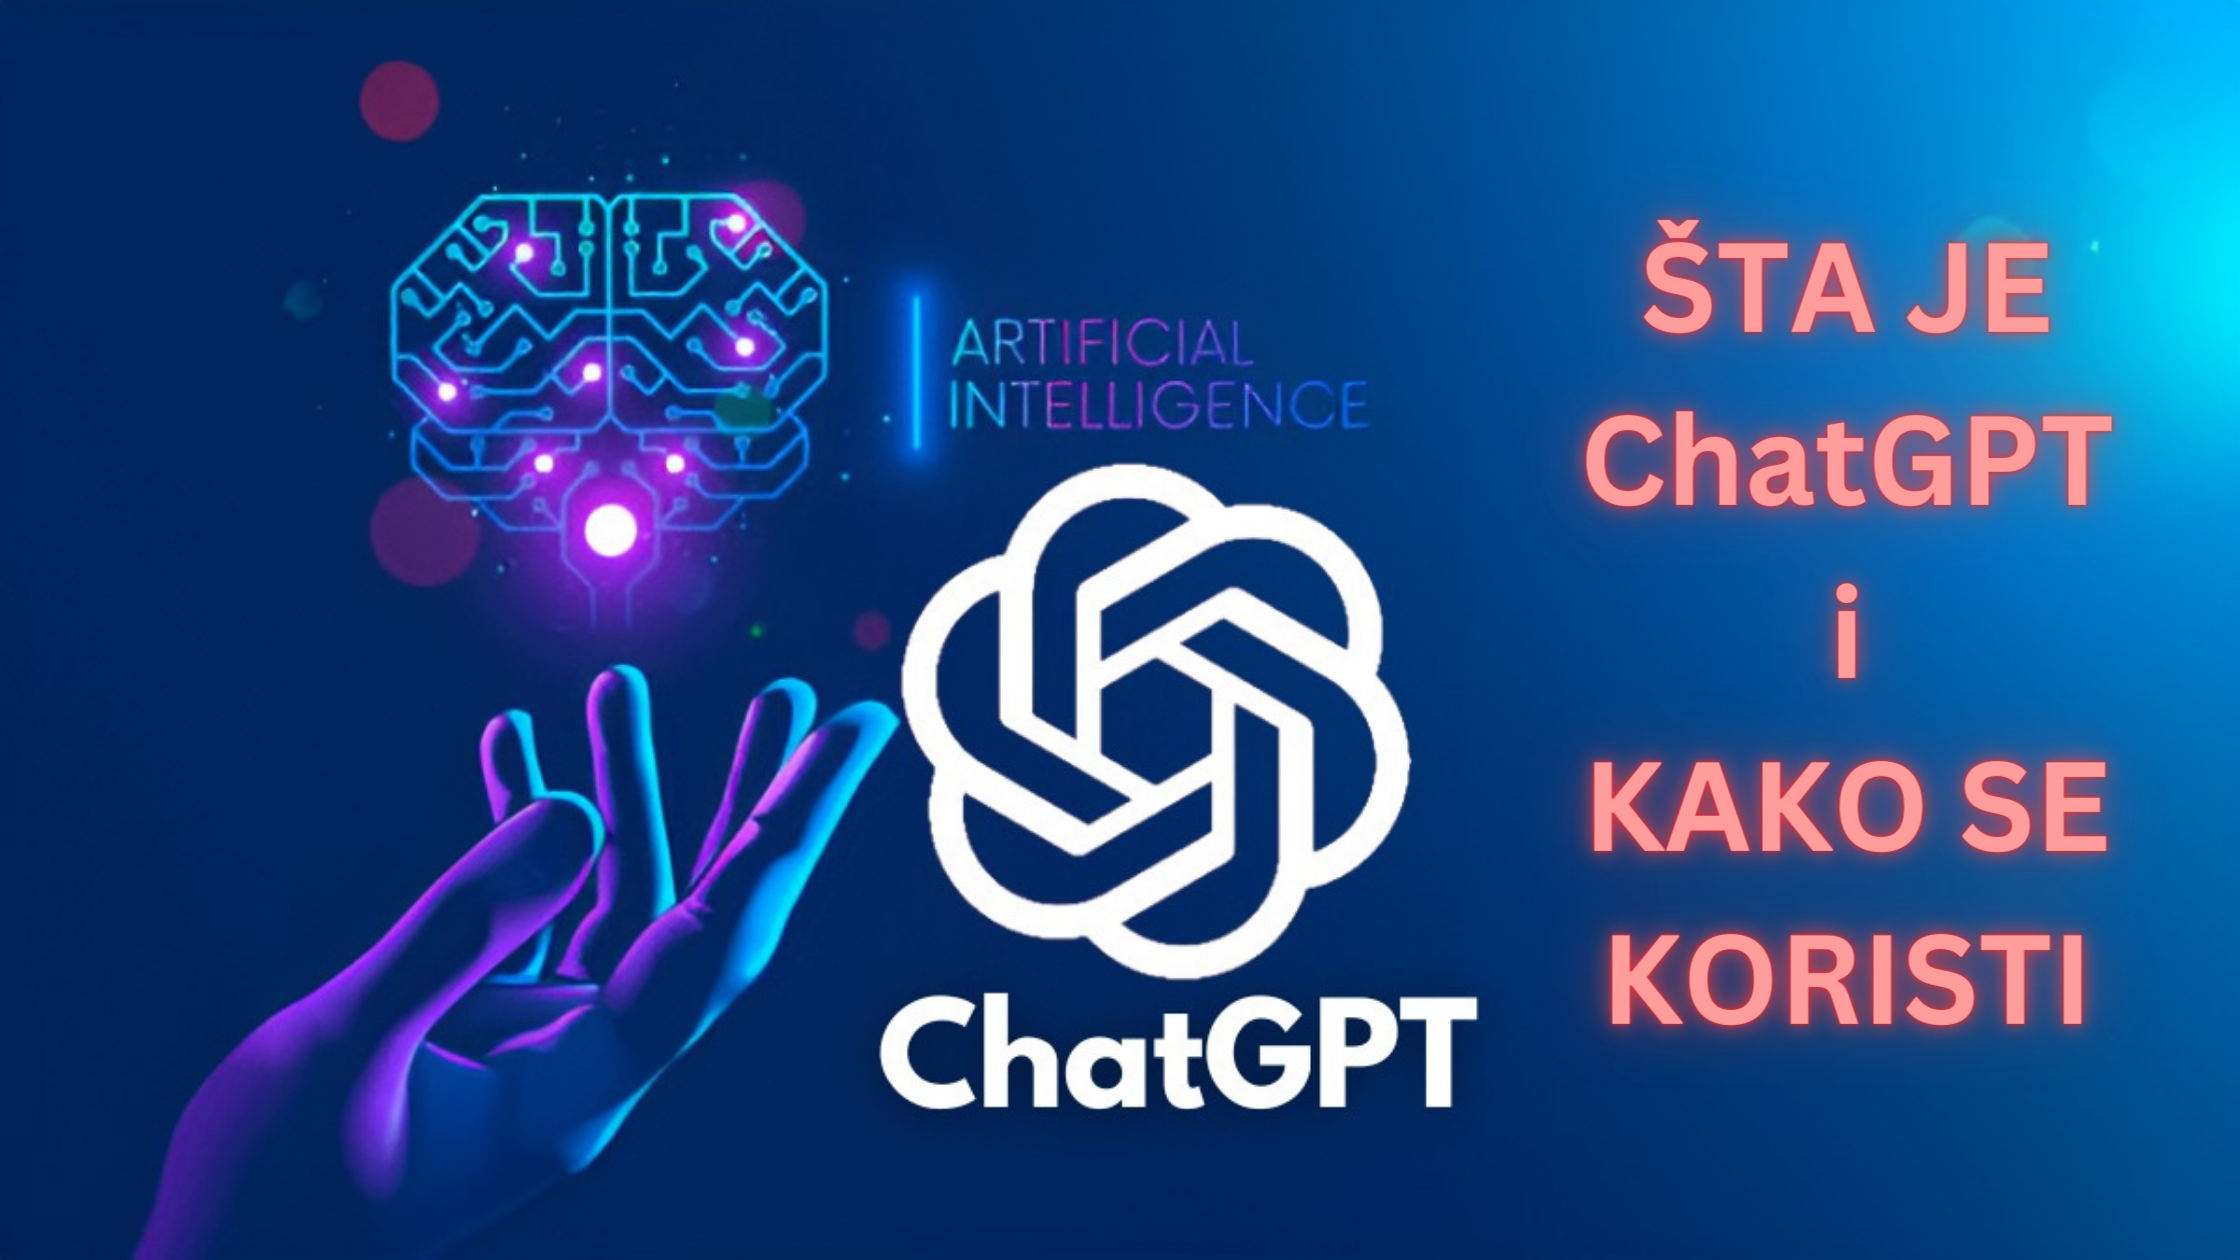 Sta Je ChatGPT i Kako Se Koristi - Upoznajte AI ChatBot-a